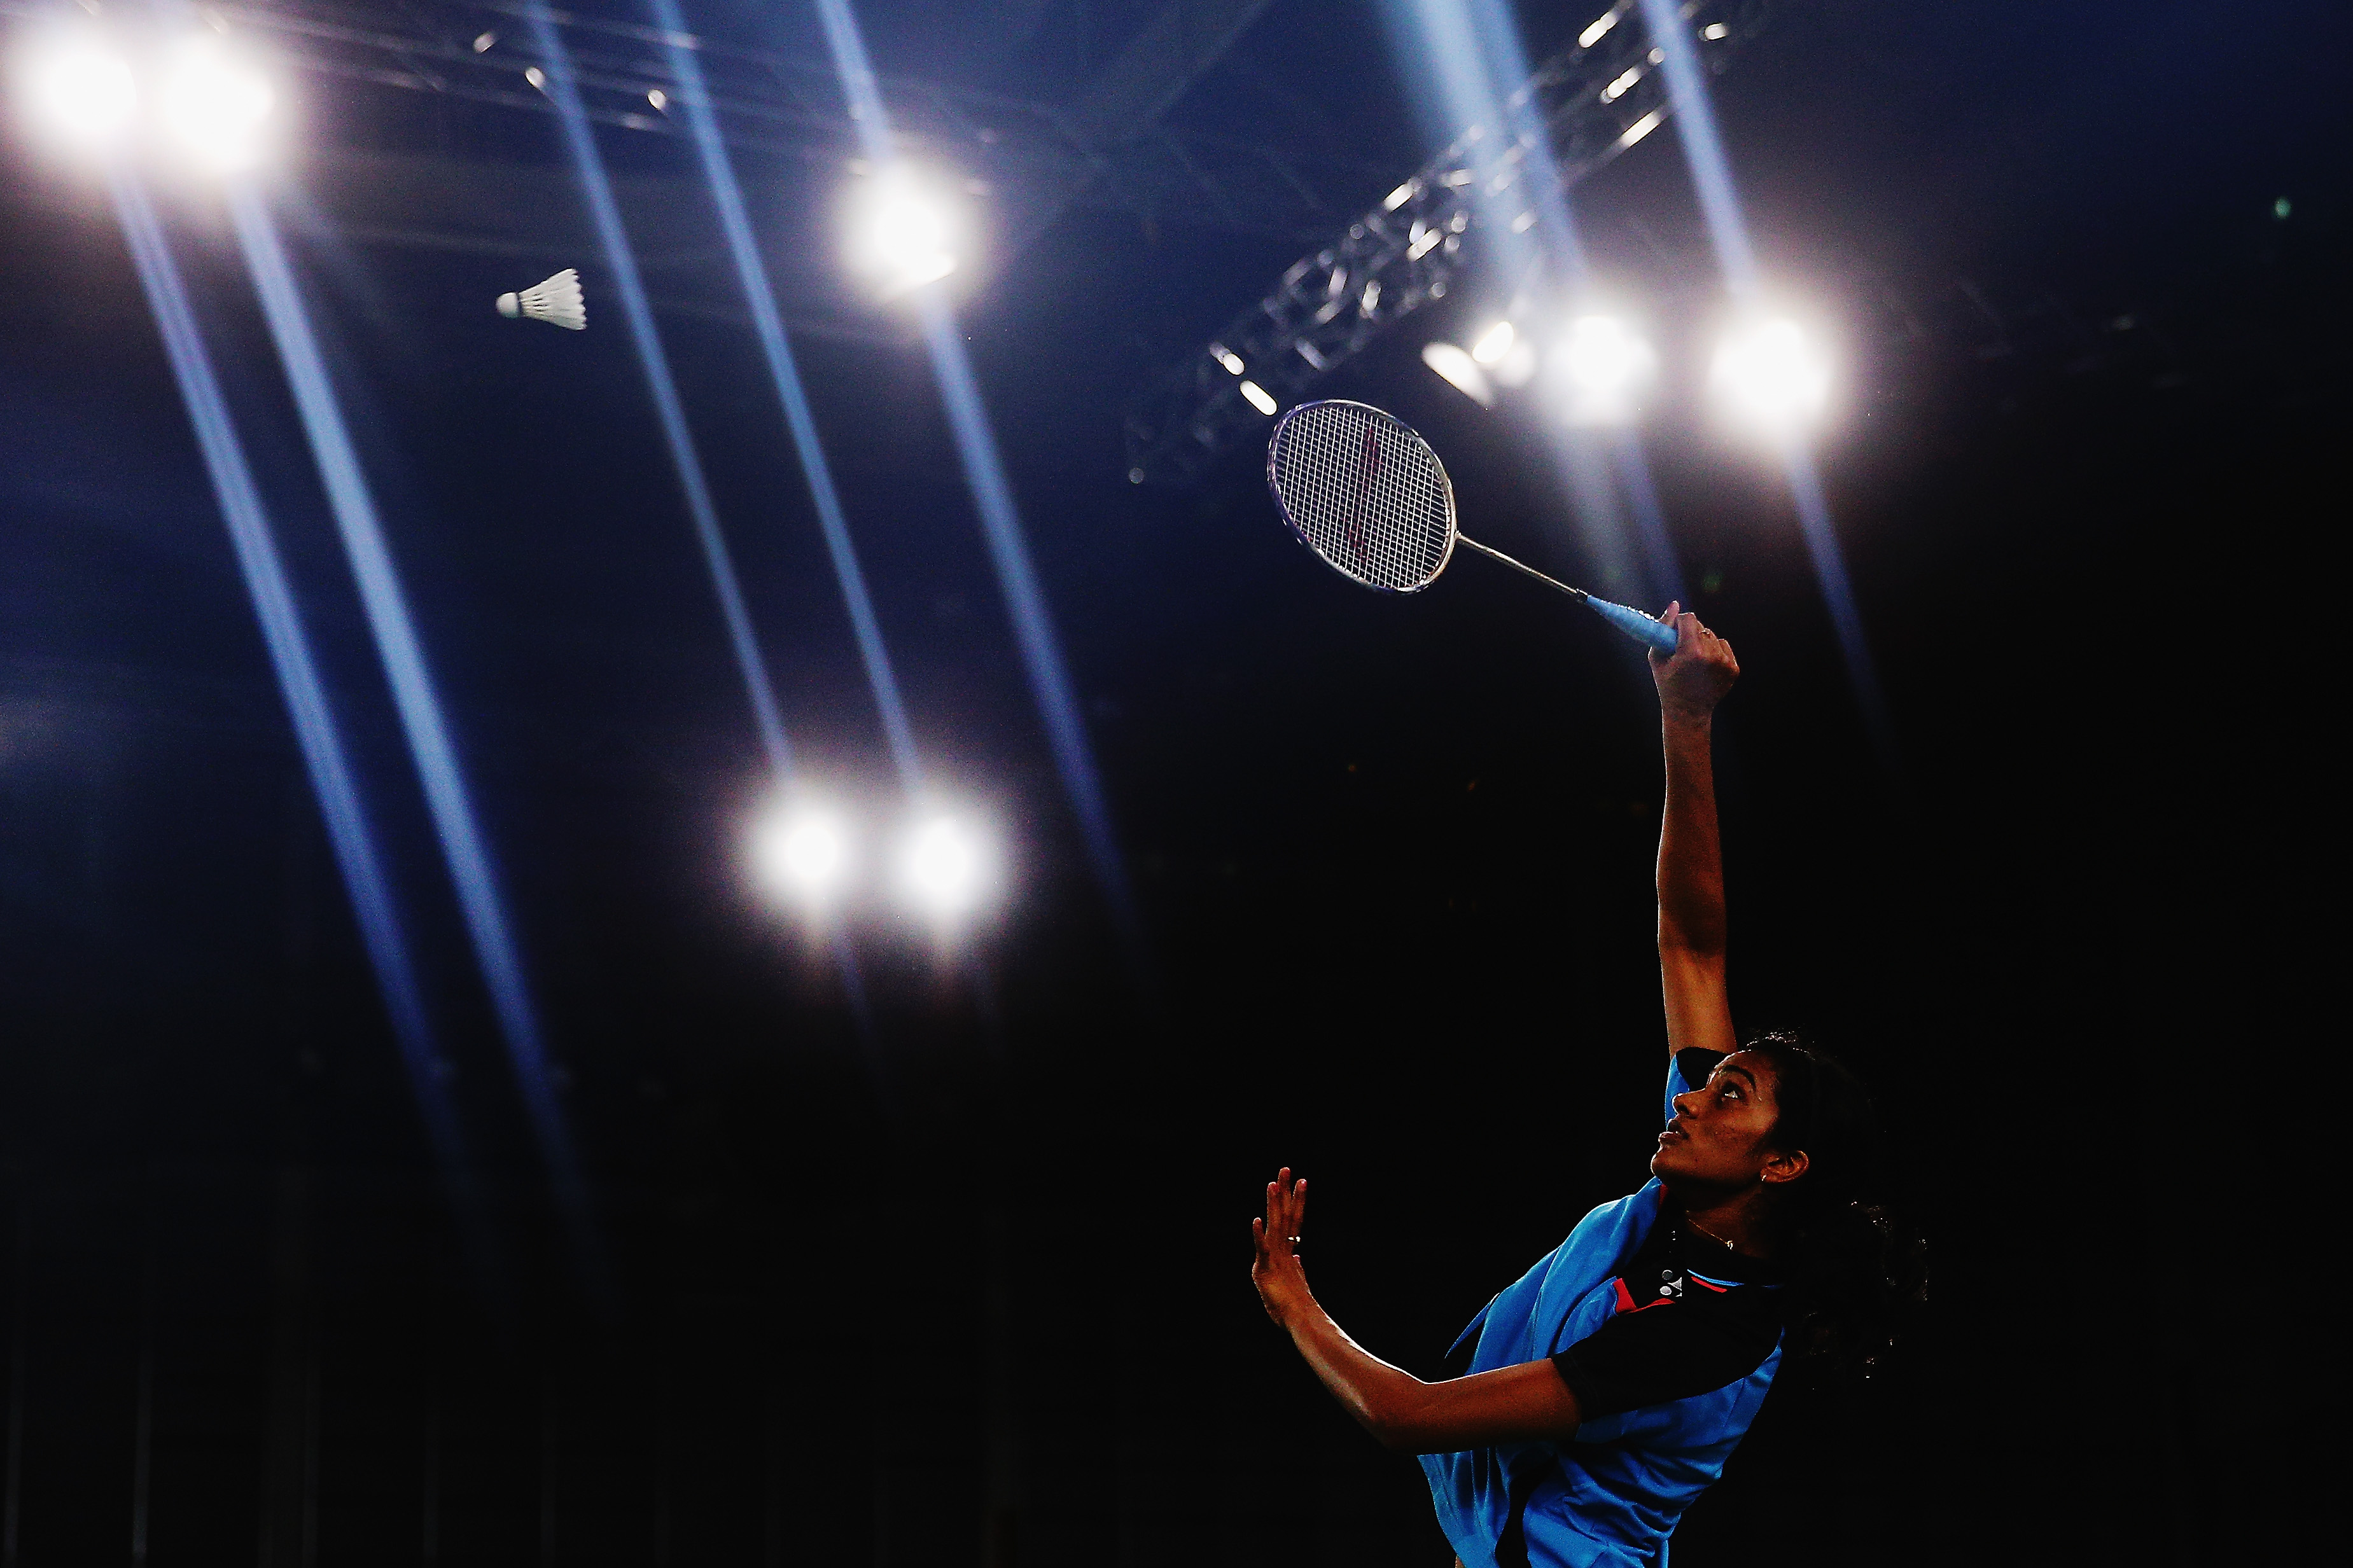 Hong Kong Open | Sindhu continues Superseries dream run to enter final